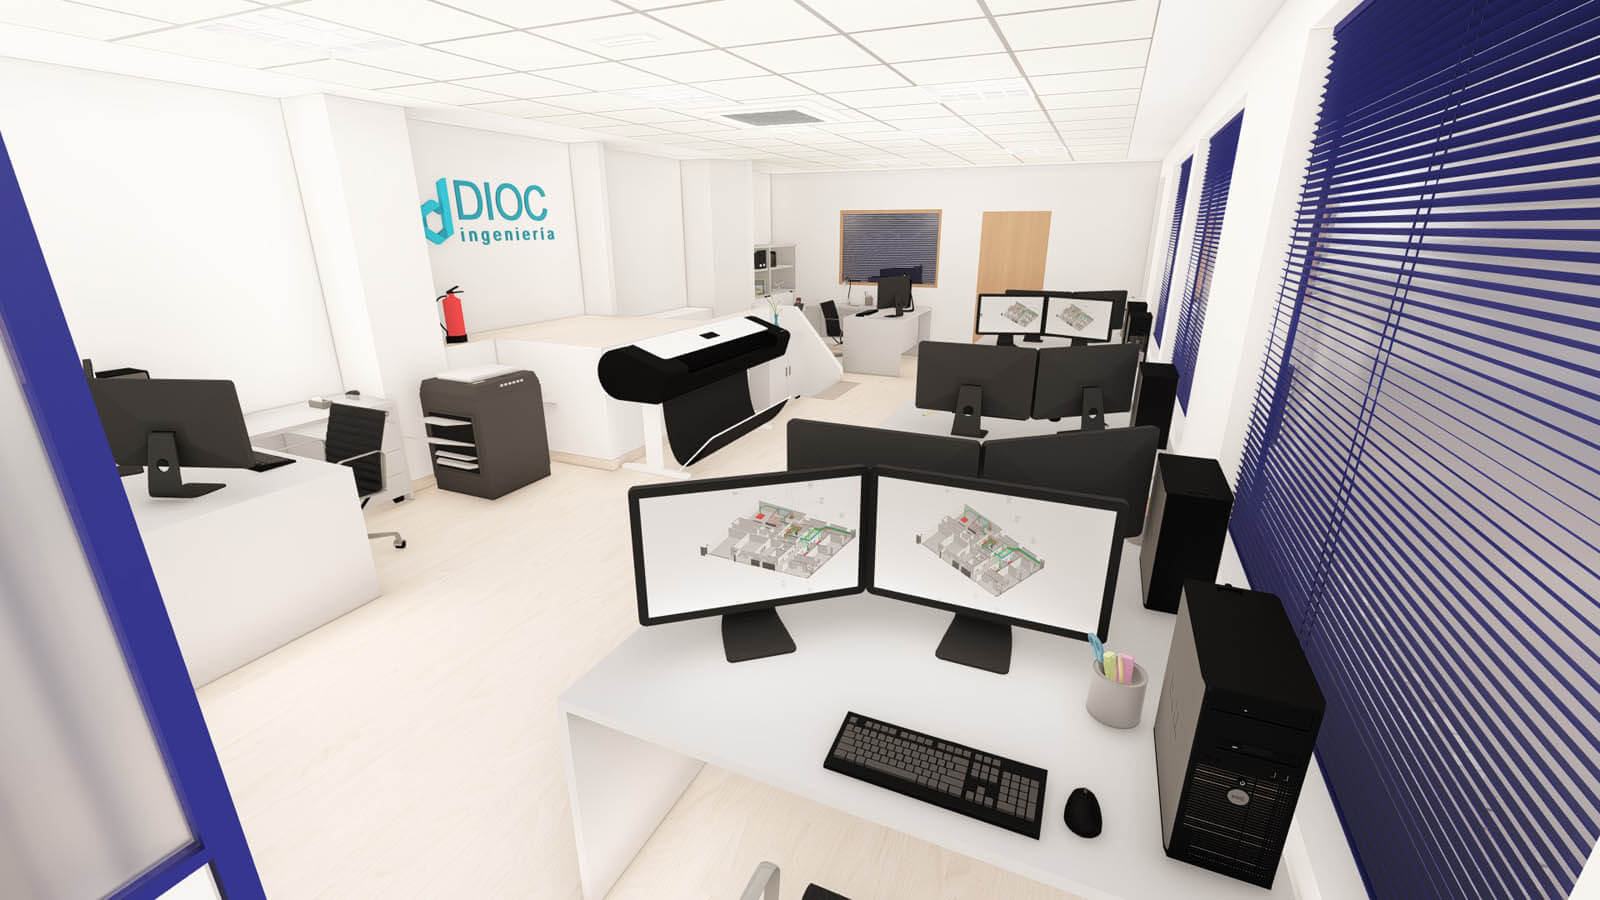 Oficina DIOC en Alcalá de Henares - 01